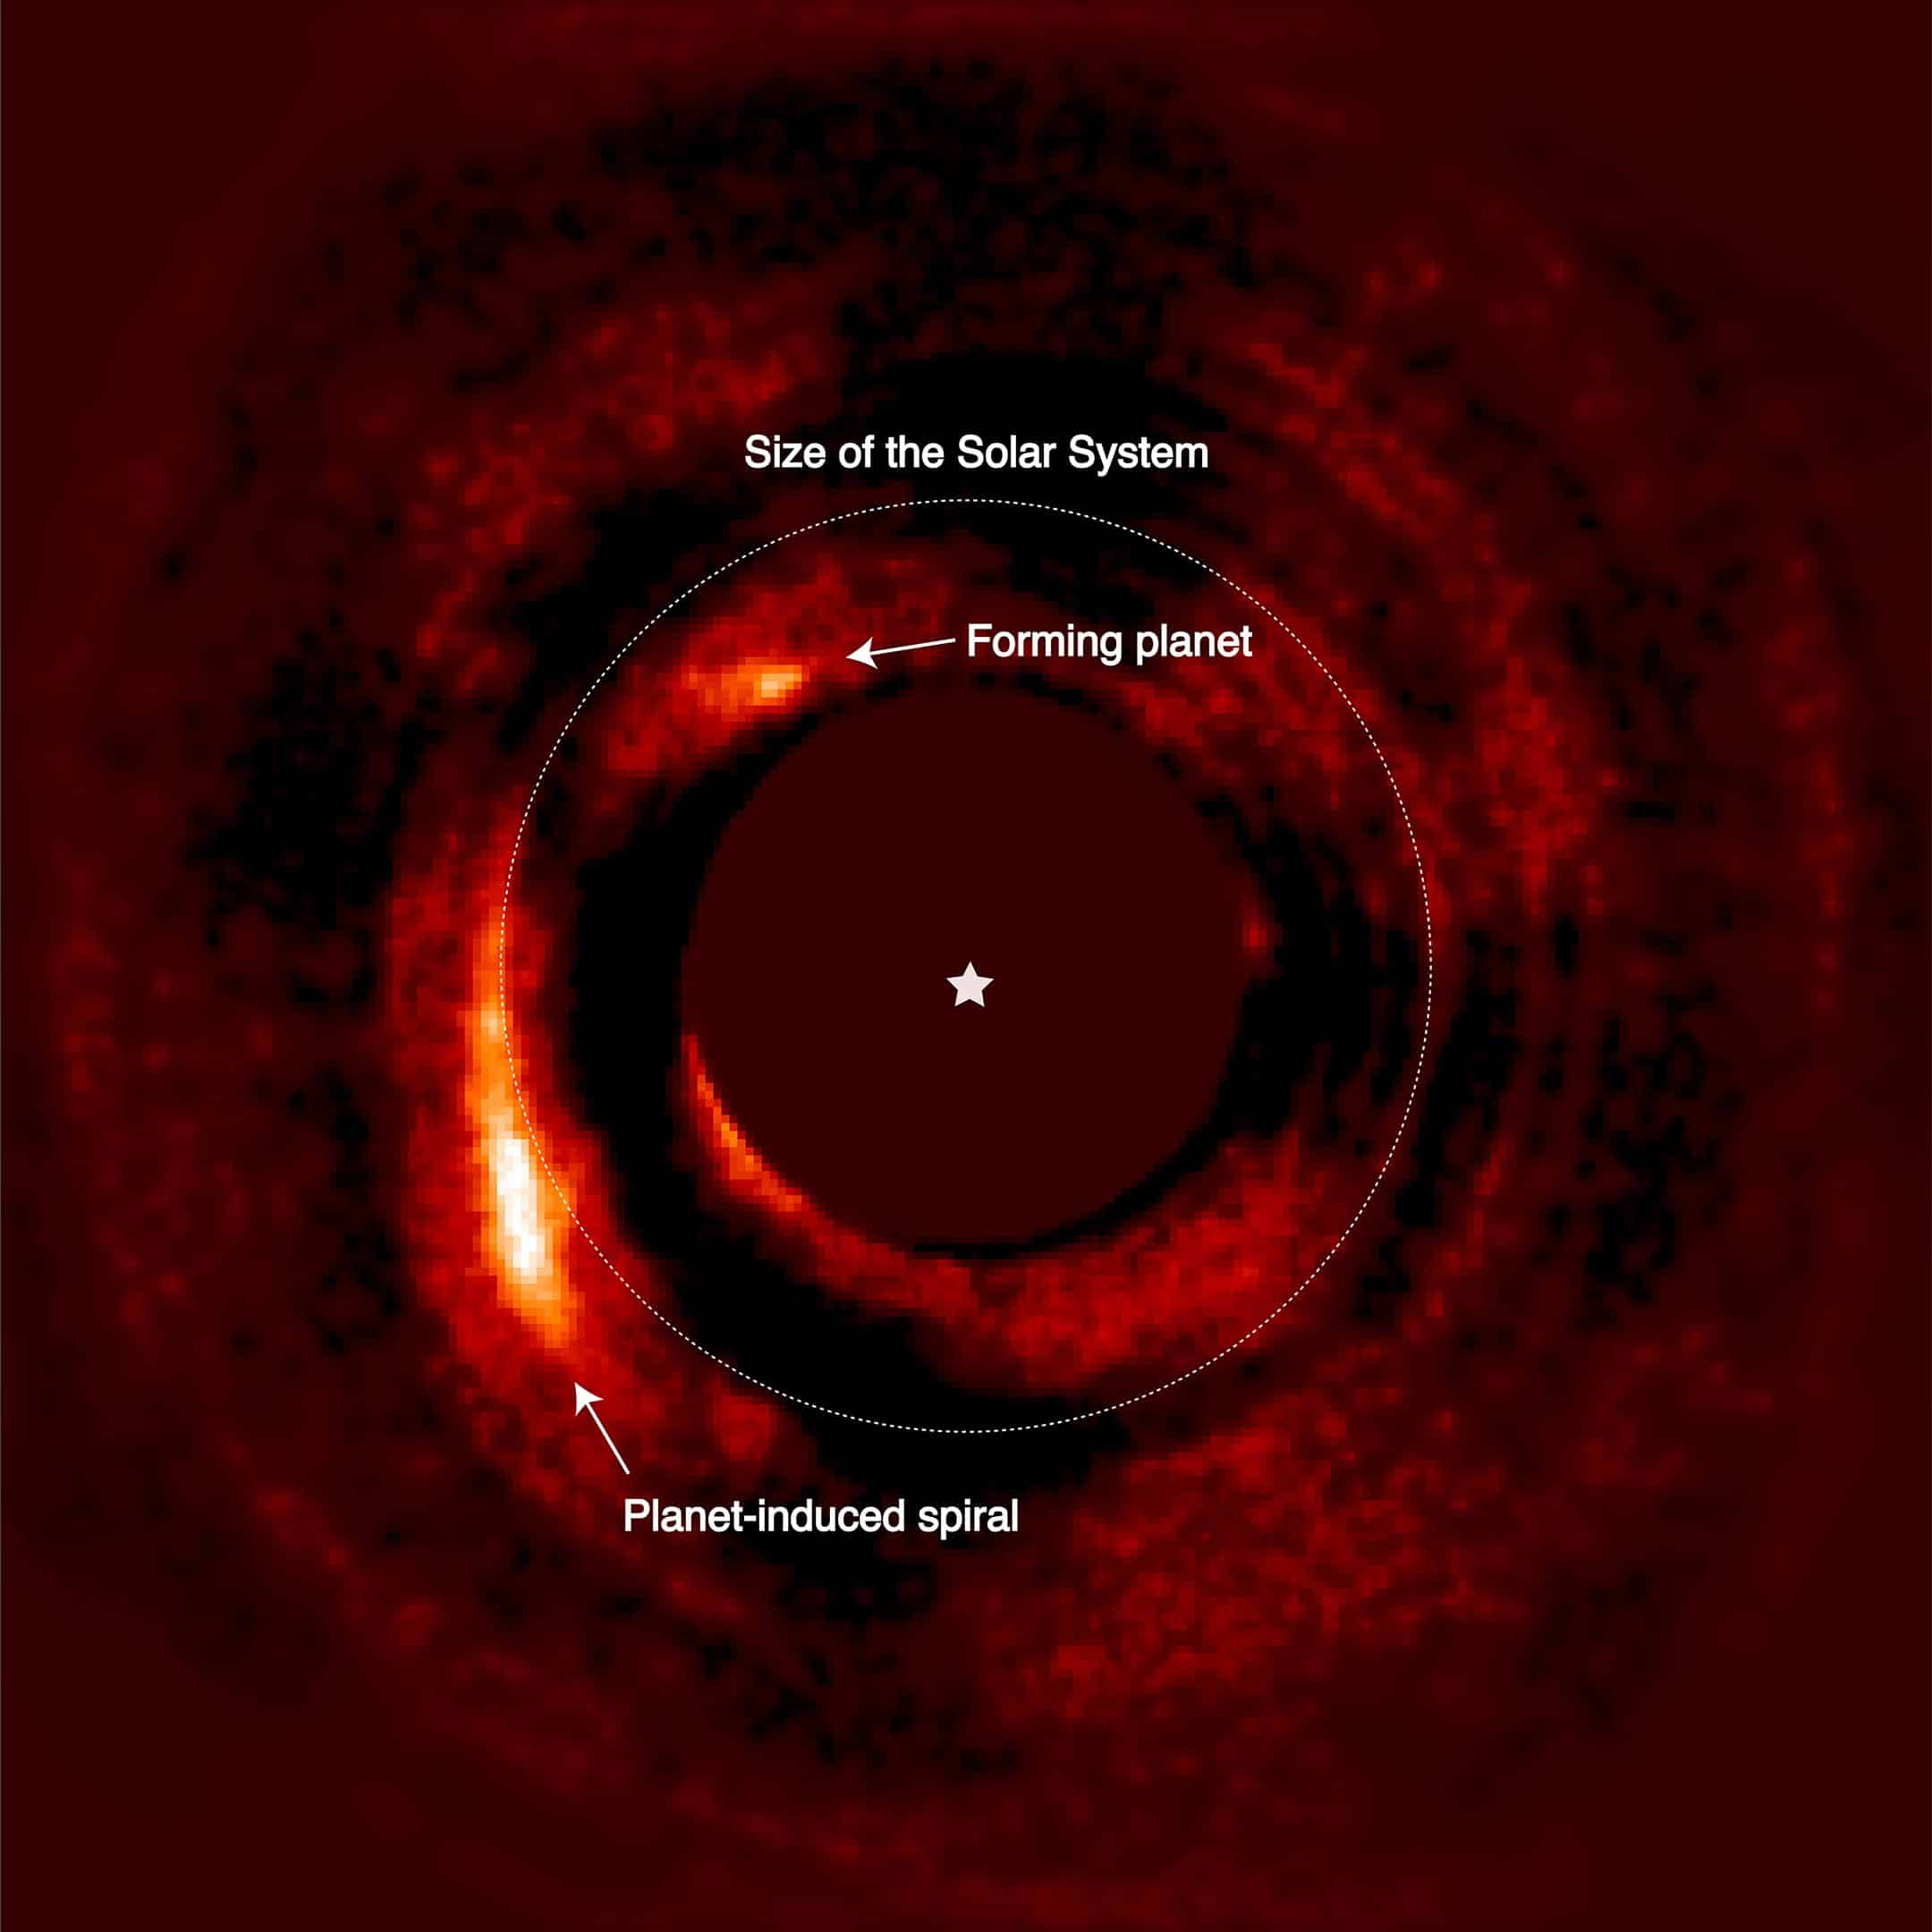 תמונה של המערכת HD 169142 מראה את האות של הפלנטה הנוצרת HD 169142 b (בסביבות שעה 11), וגם זרוע ספירלית בהירה אחריה כתוצאה של האינטראקציה הדינמית בין הפלנטה והדיסקה שבו היא נמצאת. קרדיט: V. Chrisitaens / ULiège